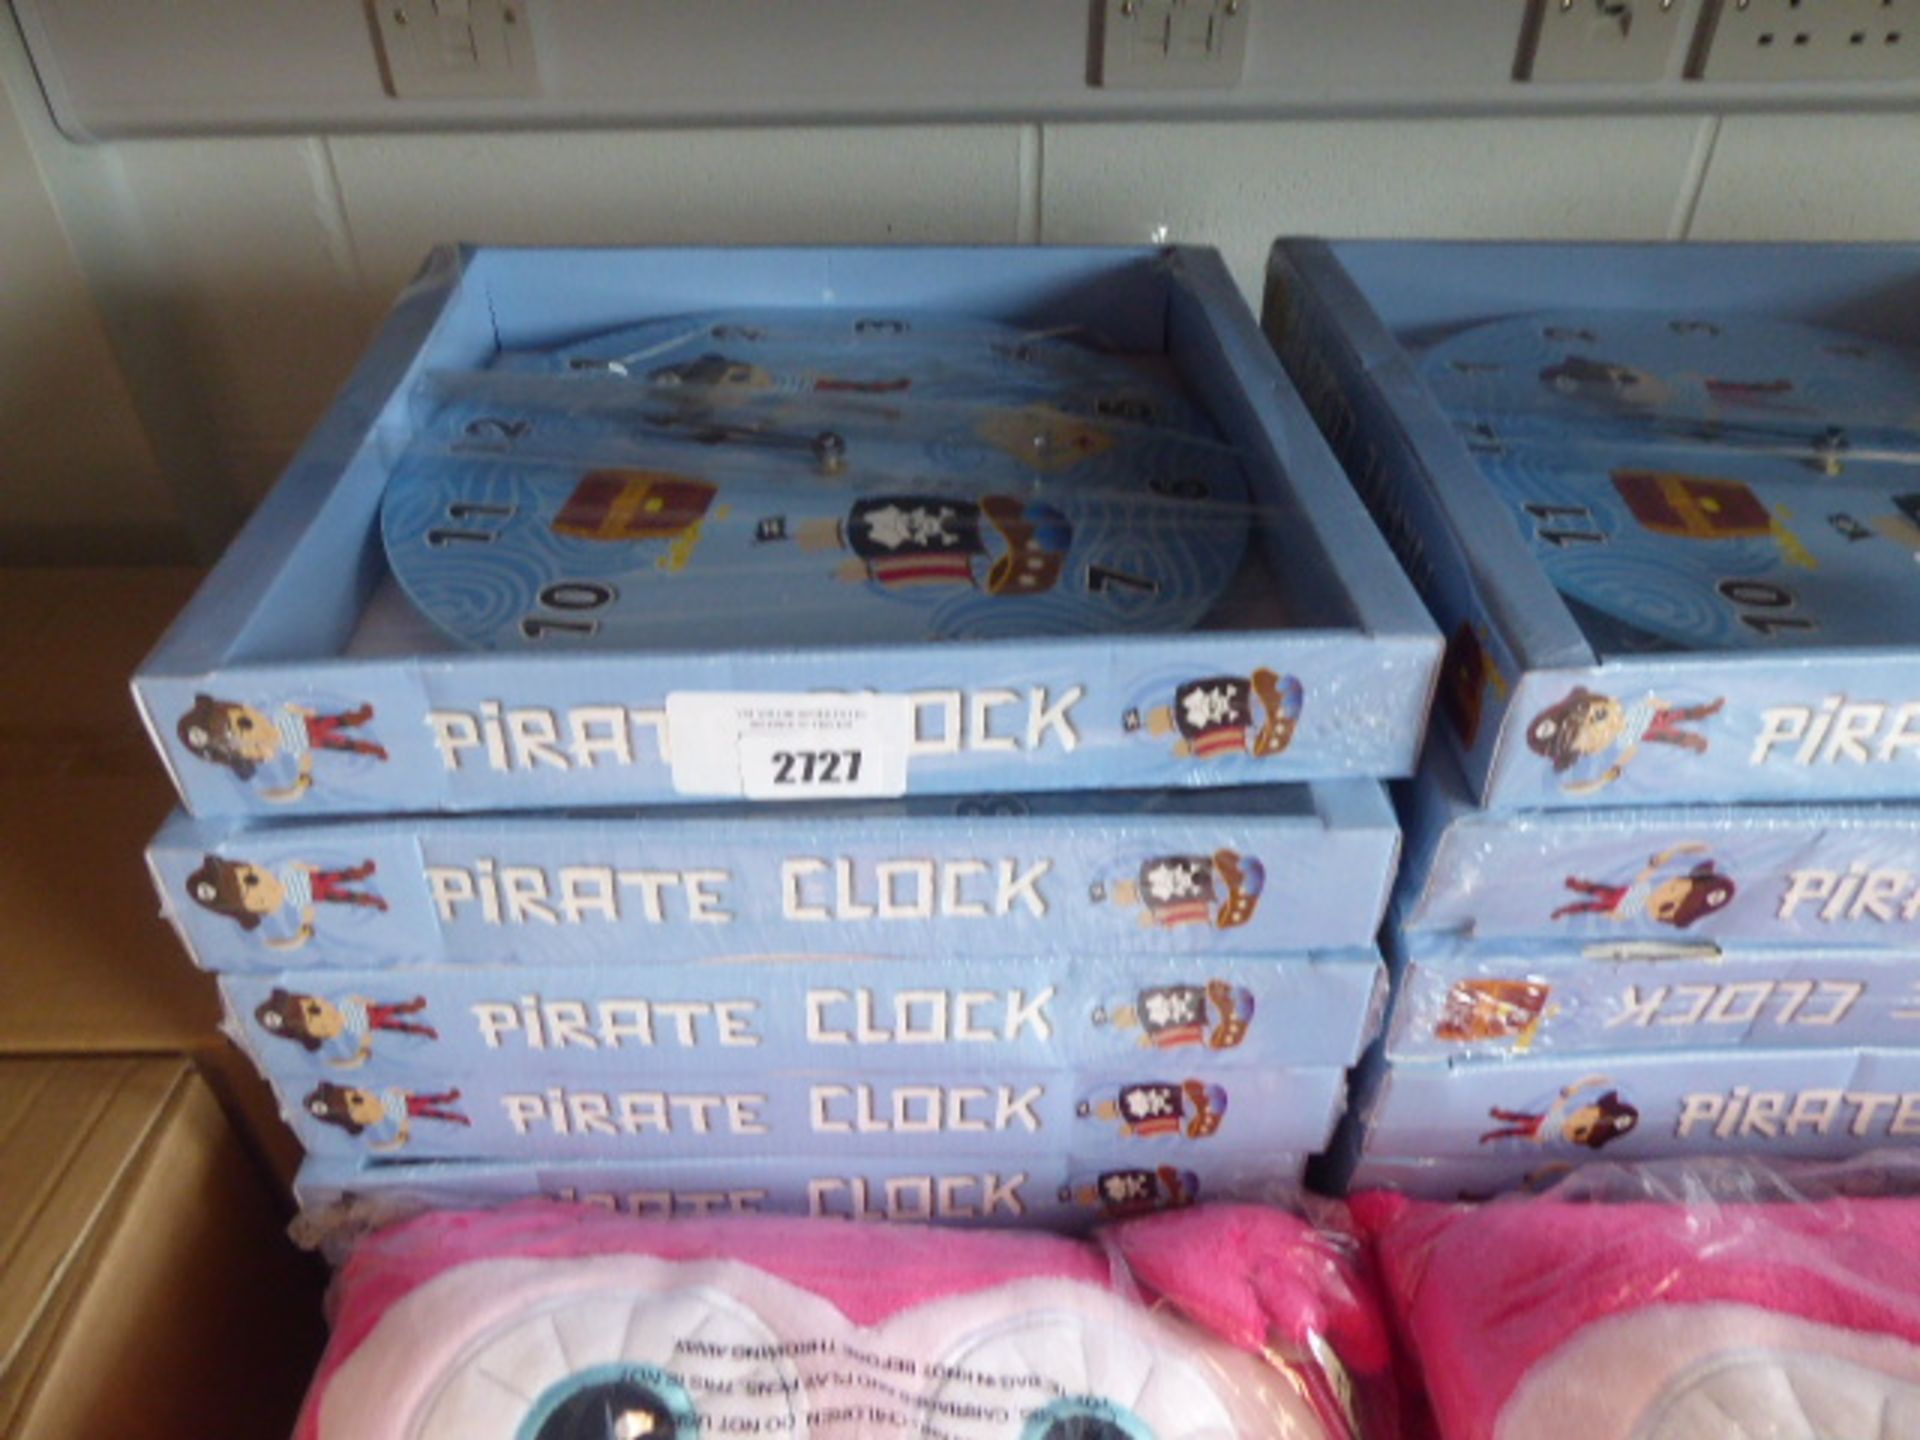 Large quantity of Pirates clocks